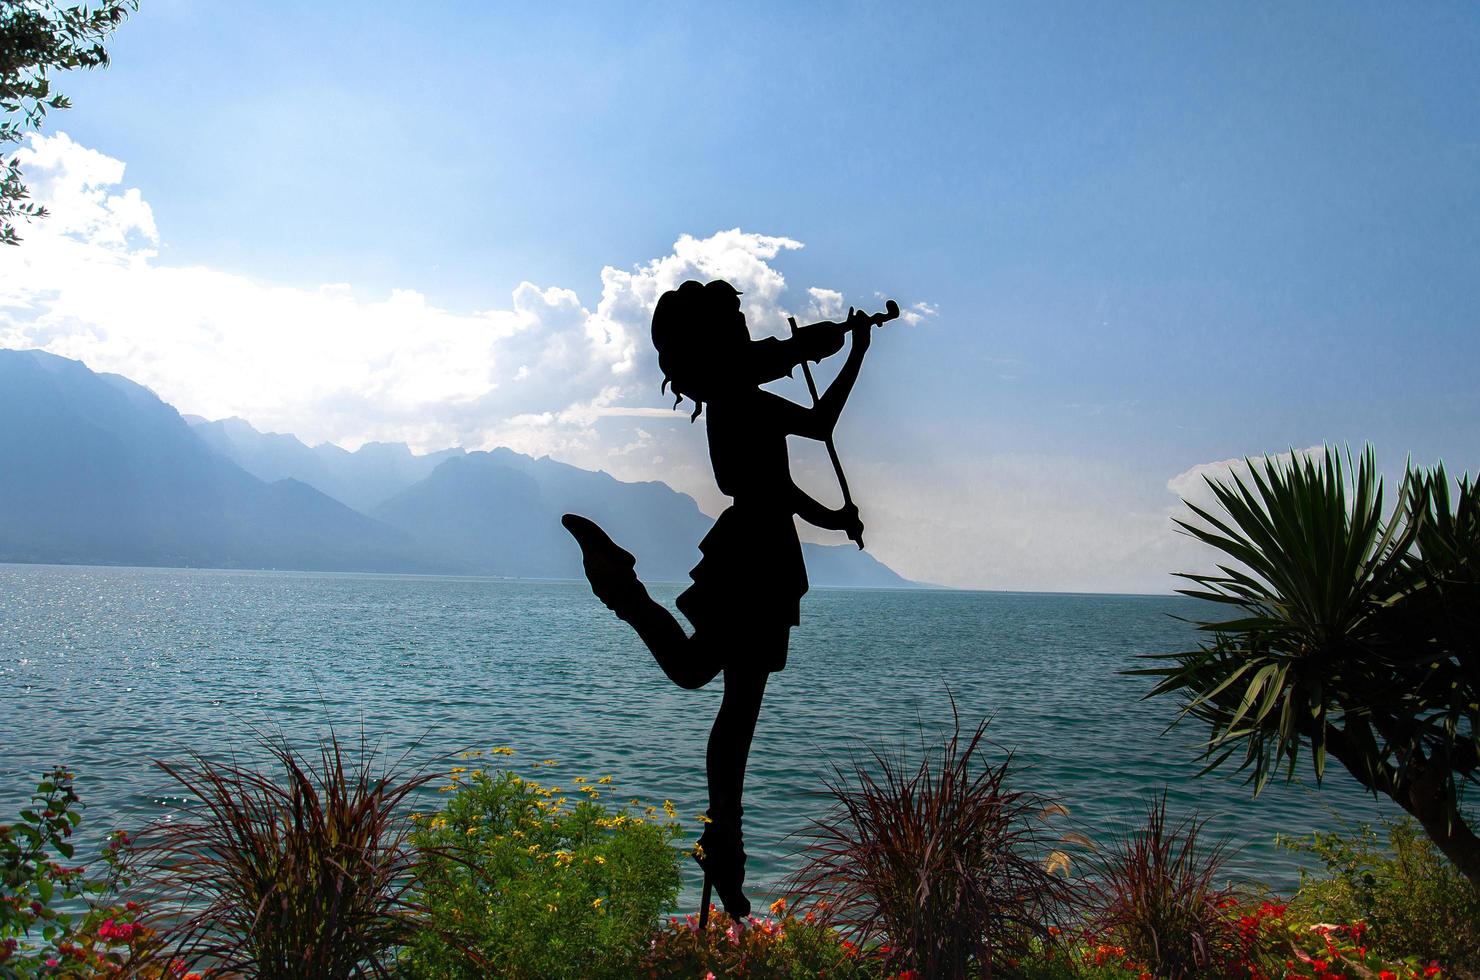 montreux, suisse - 14 septembre 2017 figure silhouette de fille avec violon sur la promenade du lac leman lac leman devant les montagnes alpes, riviera suisse, canton de vaud photo